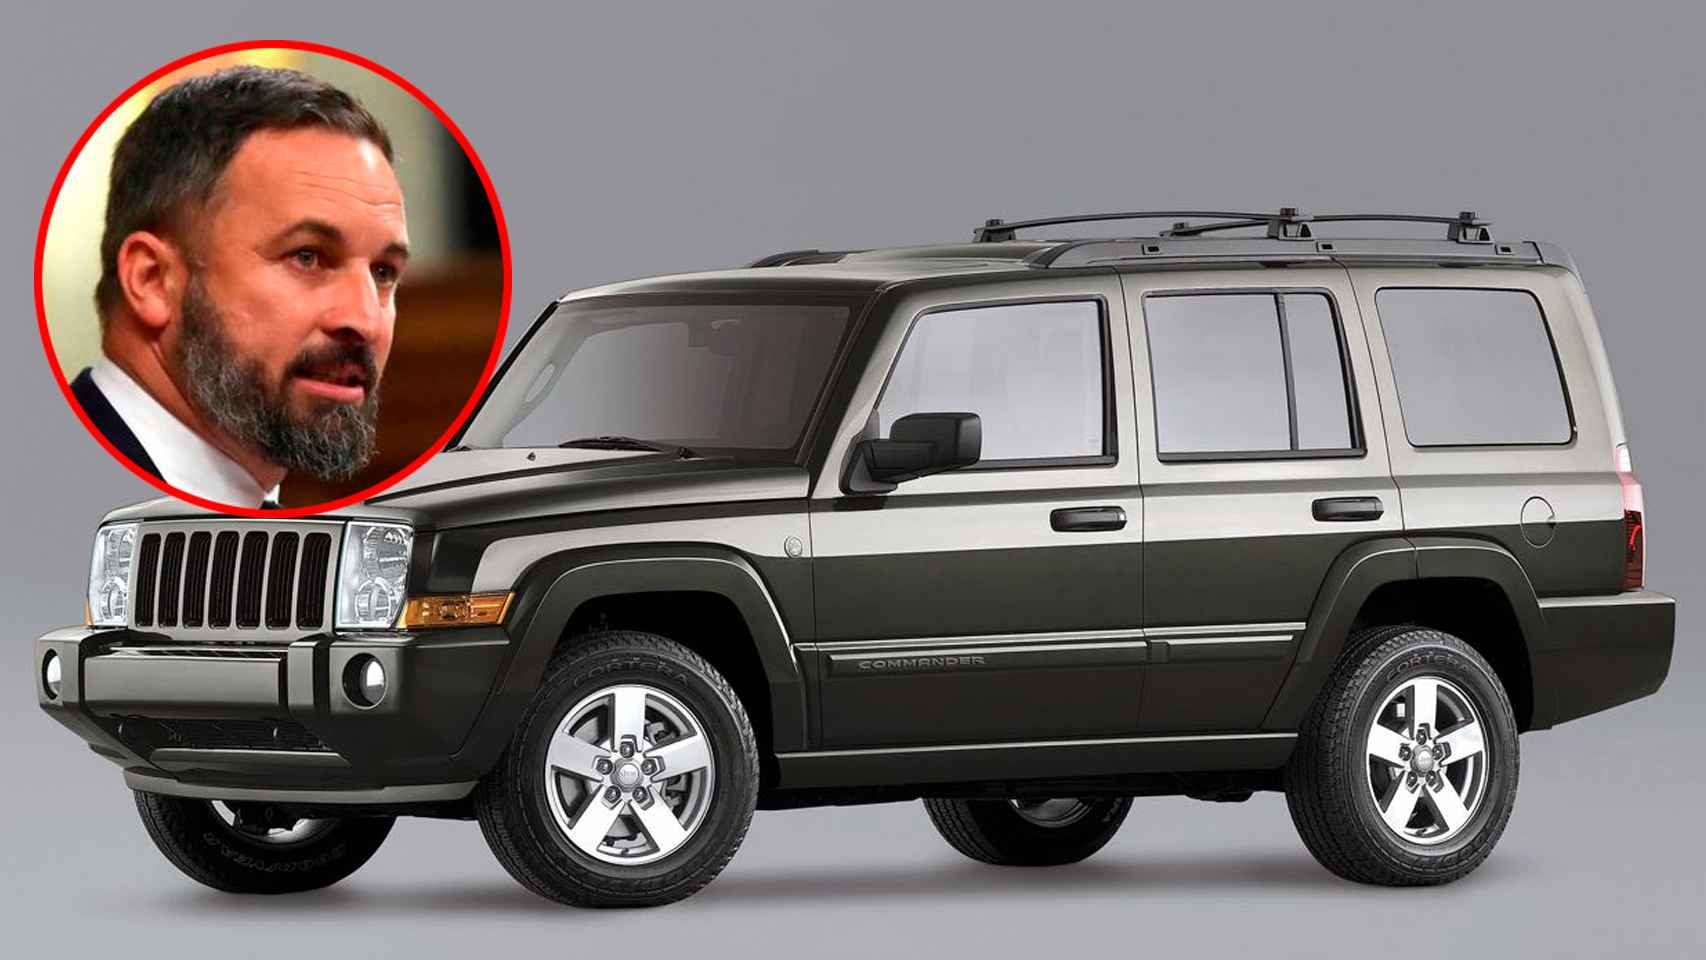 Santiago Abascal (Vox) El líder de Vox conduce un todoterreno Jeep Comander, adquirido en el año 2015.